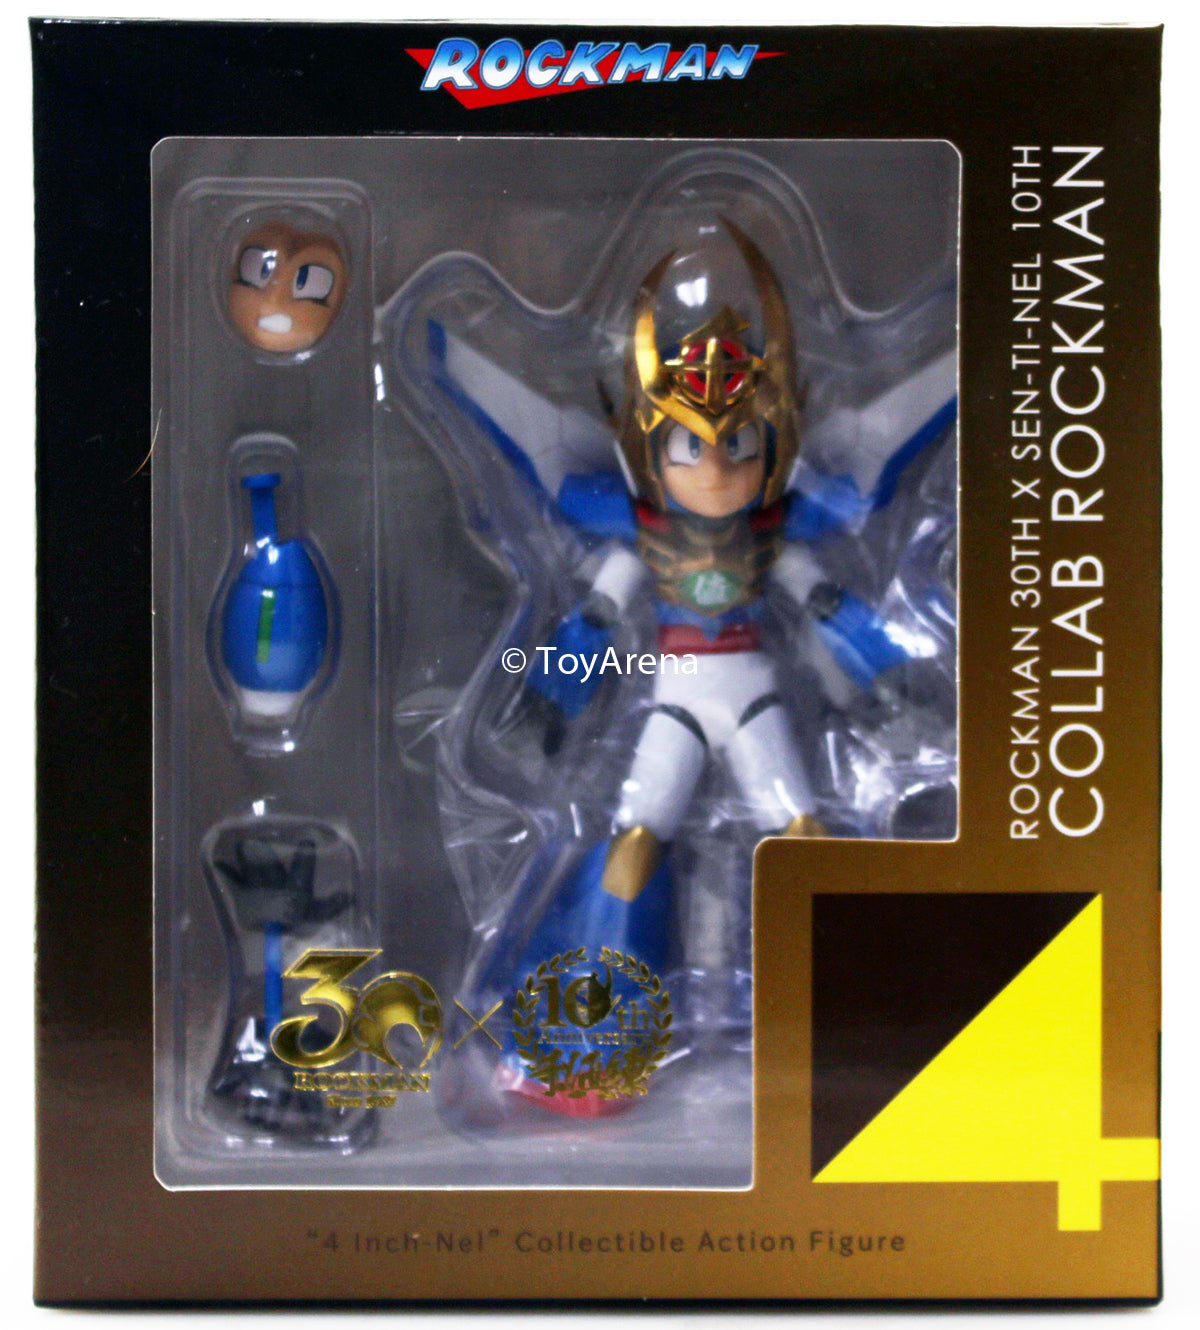 Sentinel Mega Man Rockman 30th x Sen-Ti-Nel 10th Collab 4inch-nel Action Figure